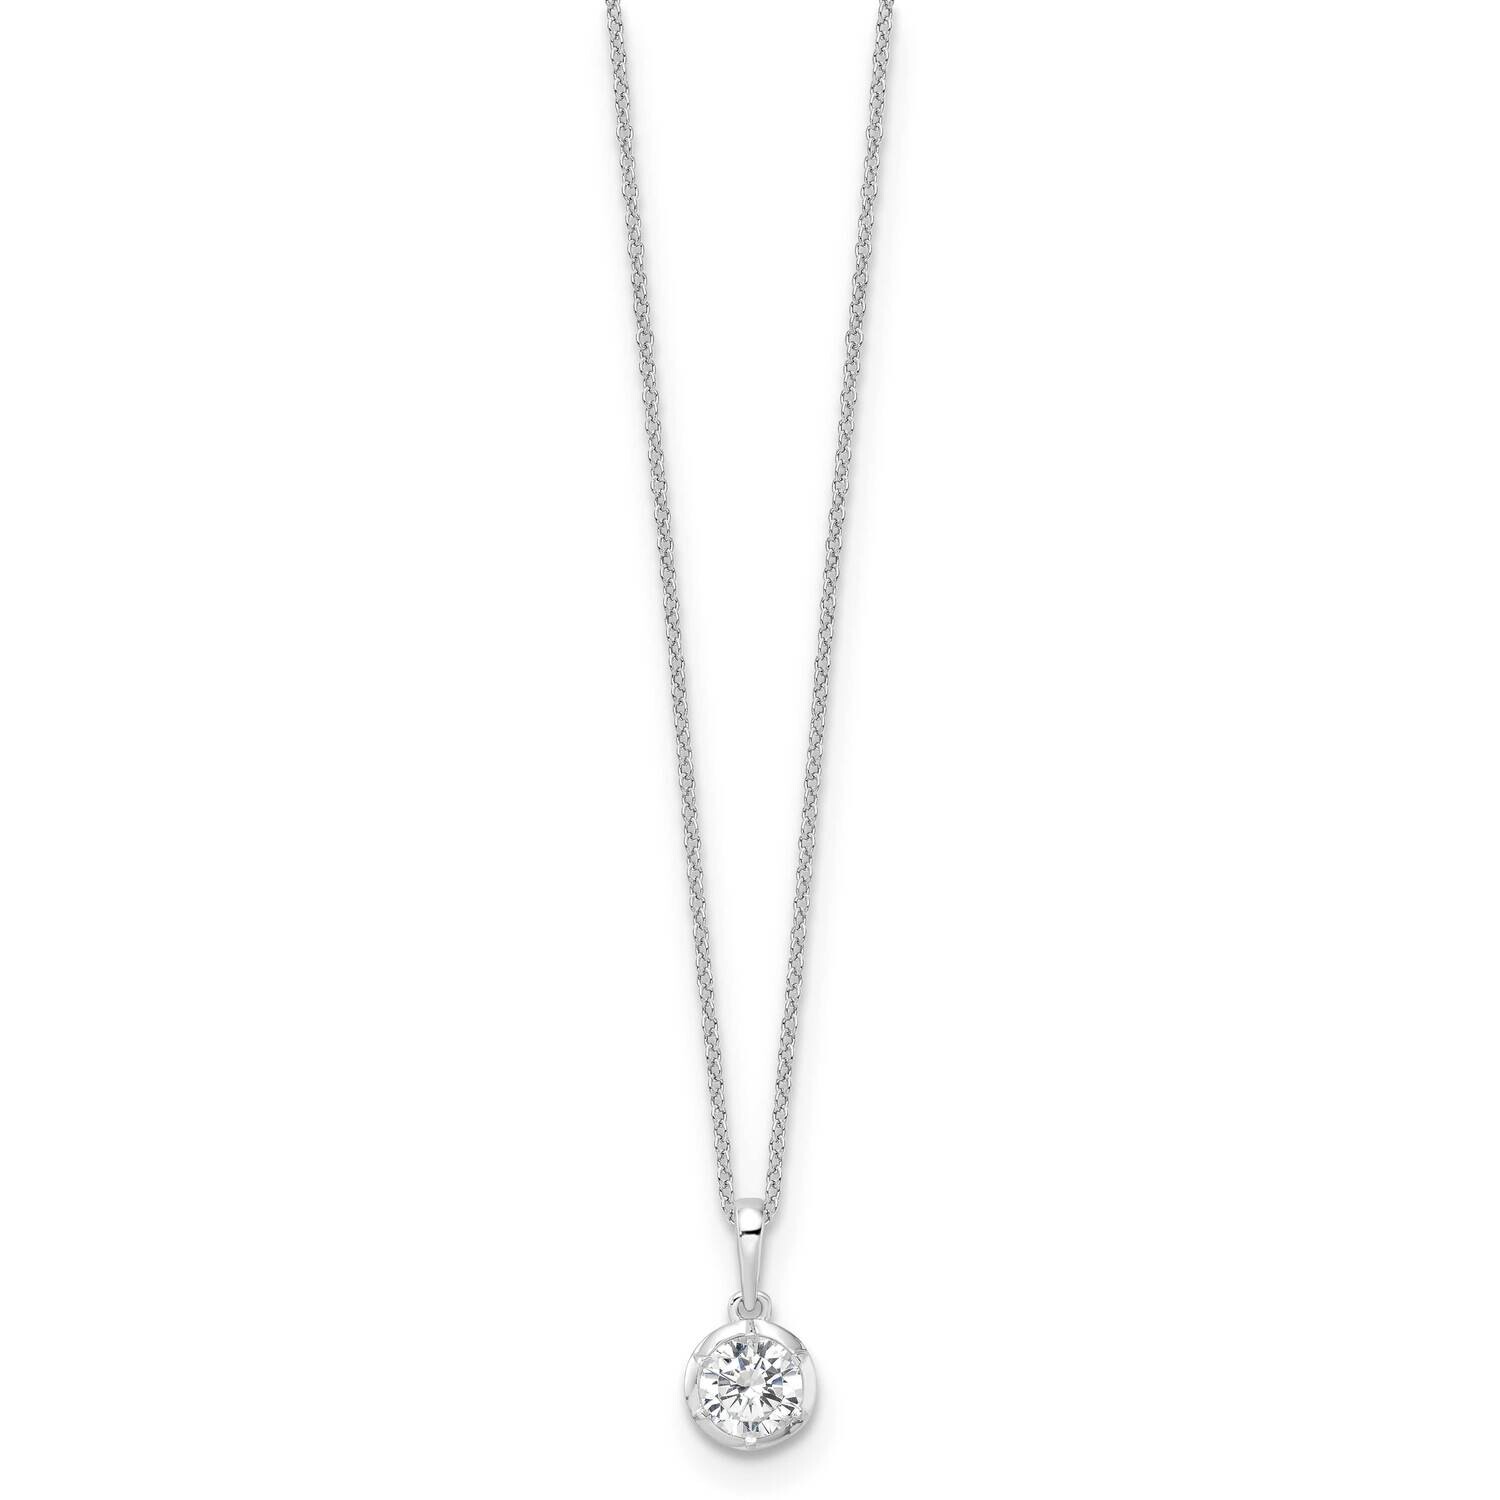 True Origin Diamond Vs/Si D E F Solitaire Necklace 14k White Gold PM9380-075-WLD